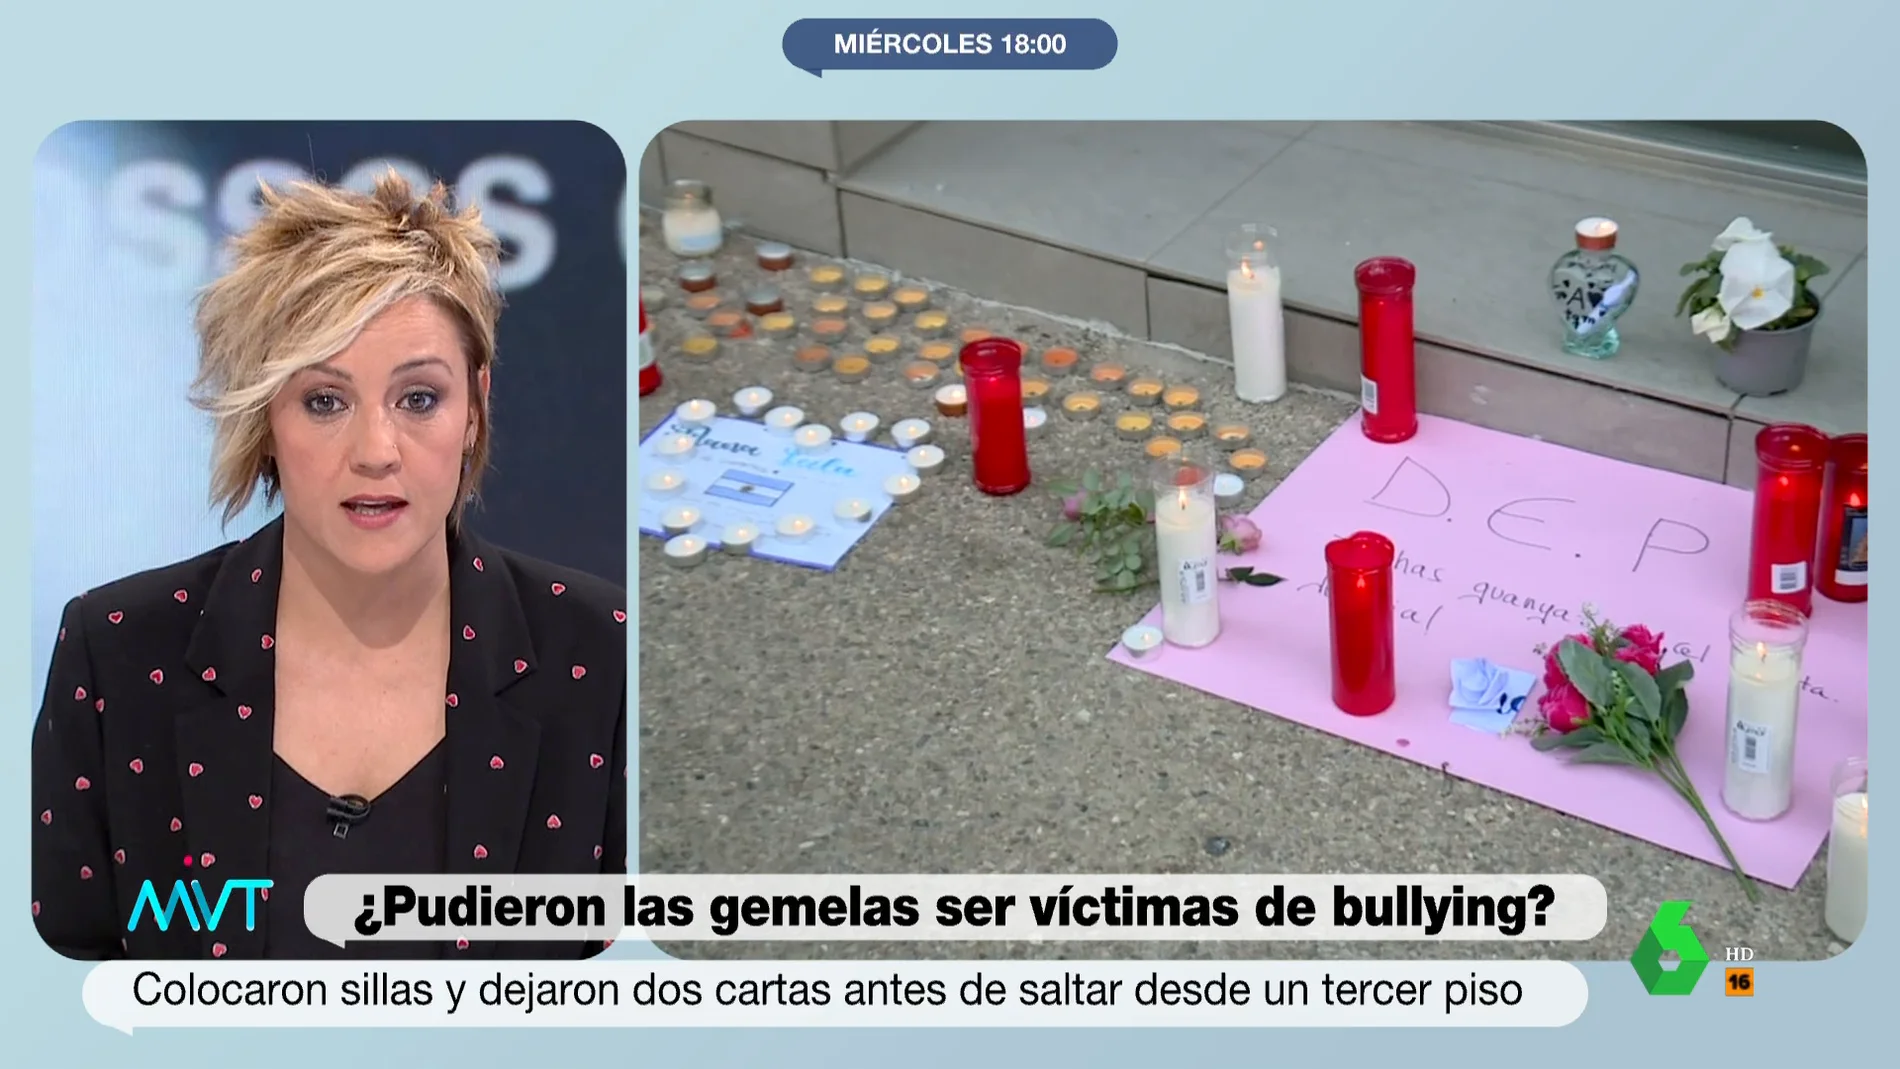 El alegato de Cristina Pardo contra el acoso escolar: "Es importantísimo que los colegios estén ojo avizor"